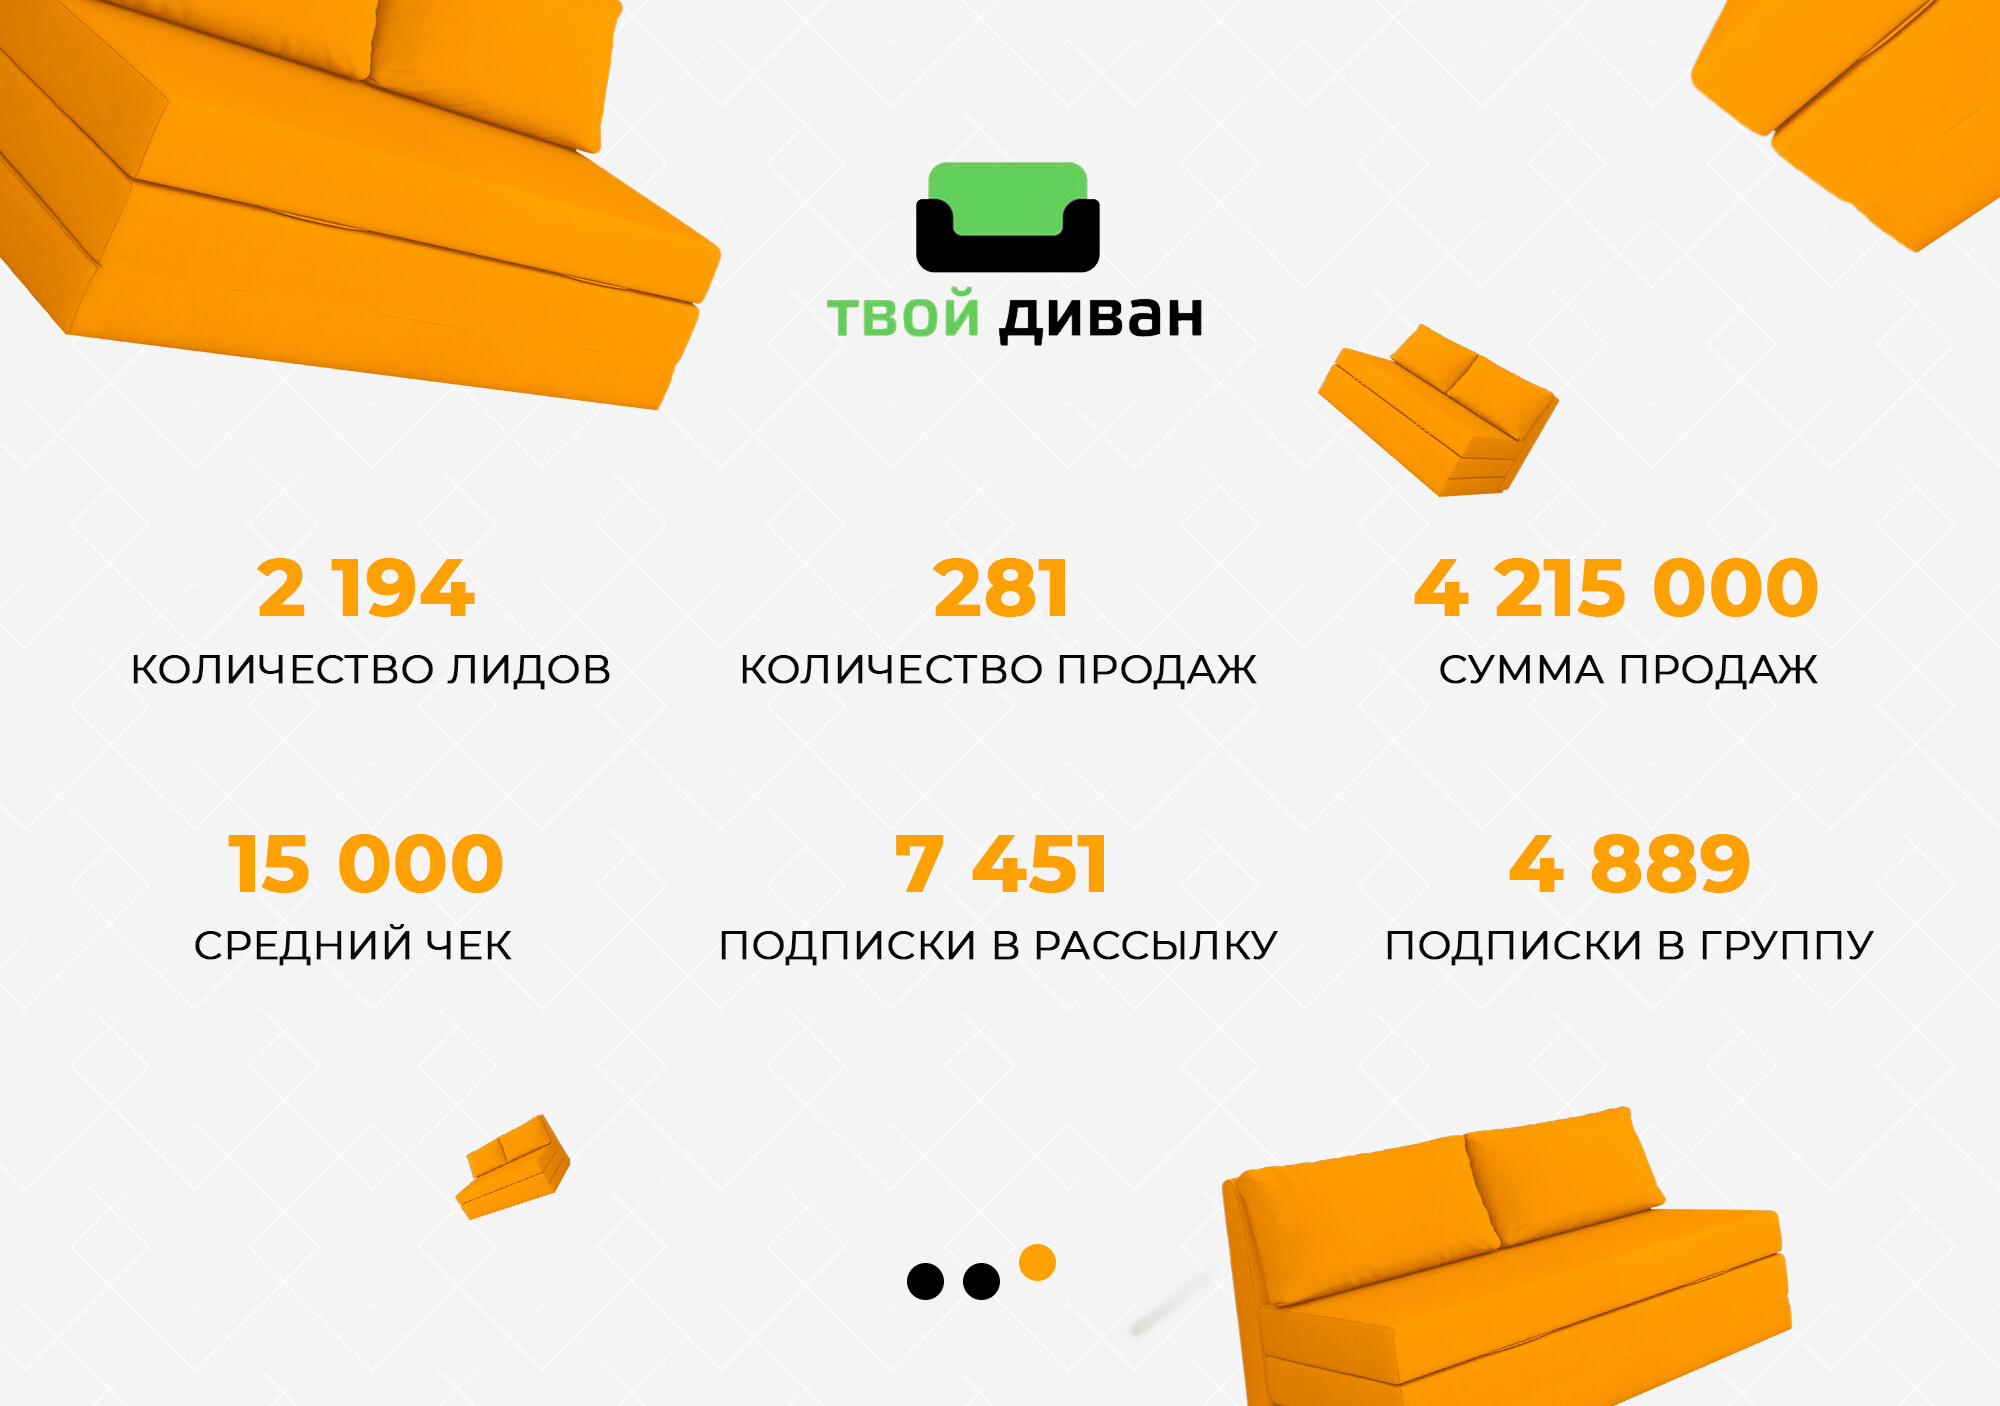 Продвижение мебельного магазина во ВКонтакте